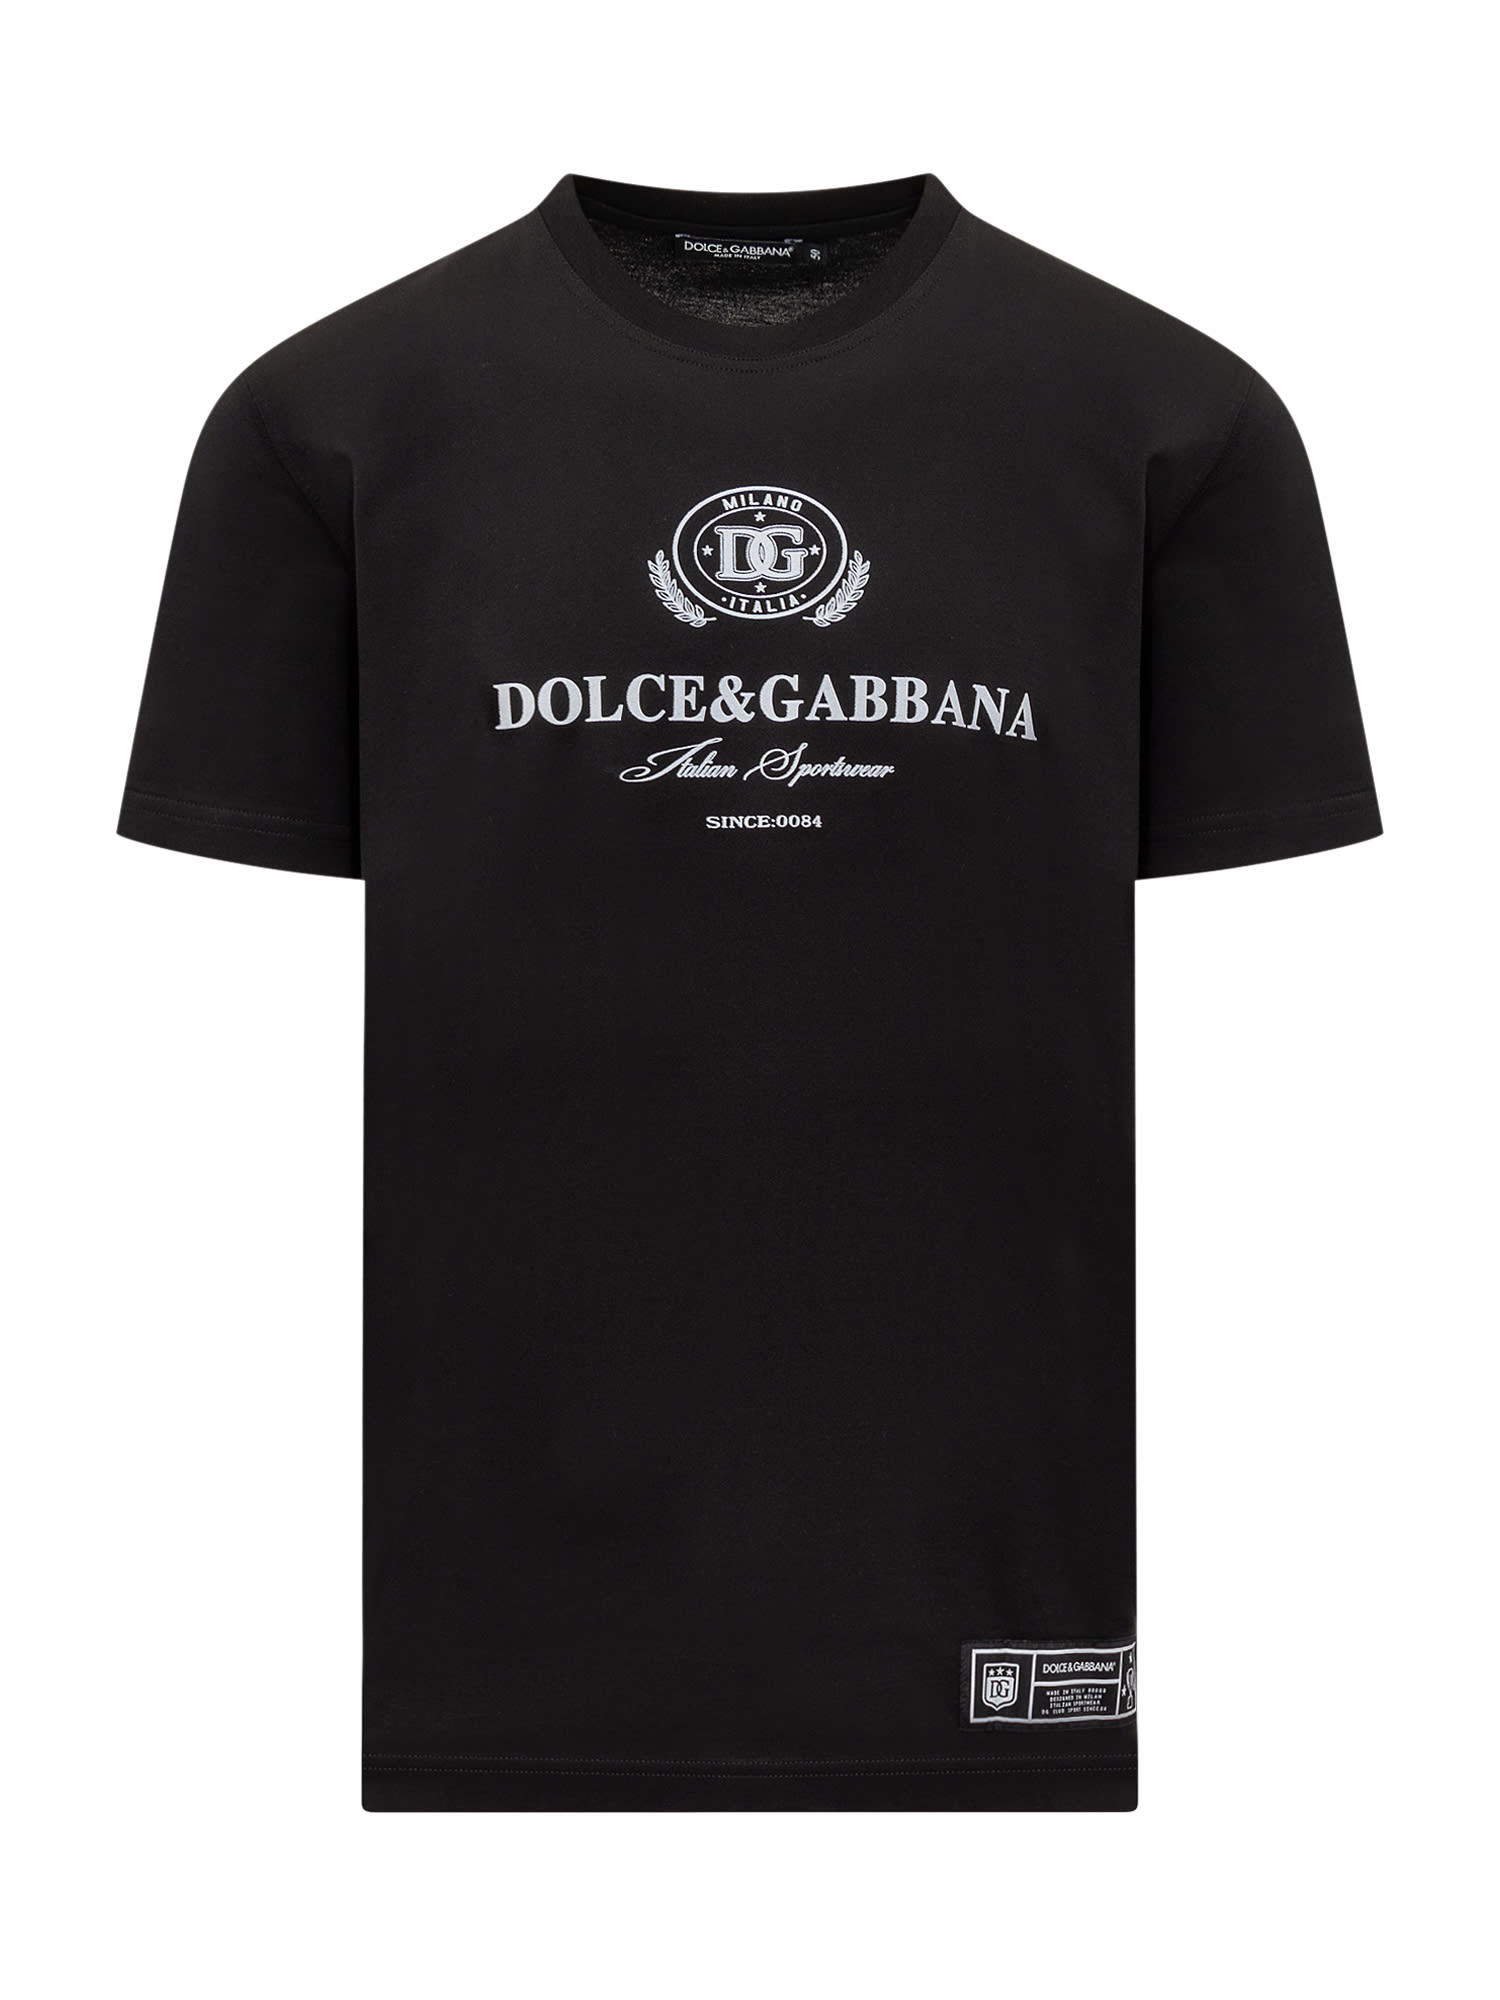 Dolce & Gabbana Dolce&gabbana Italian Sportswear T-shirt In Black